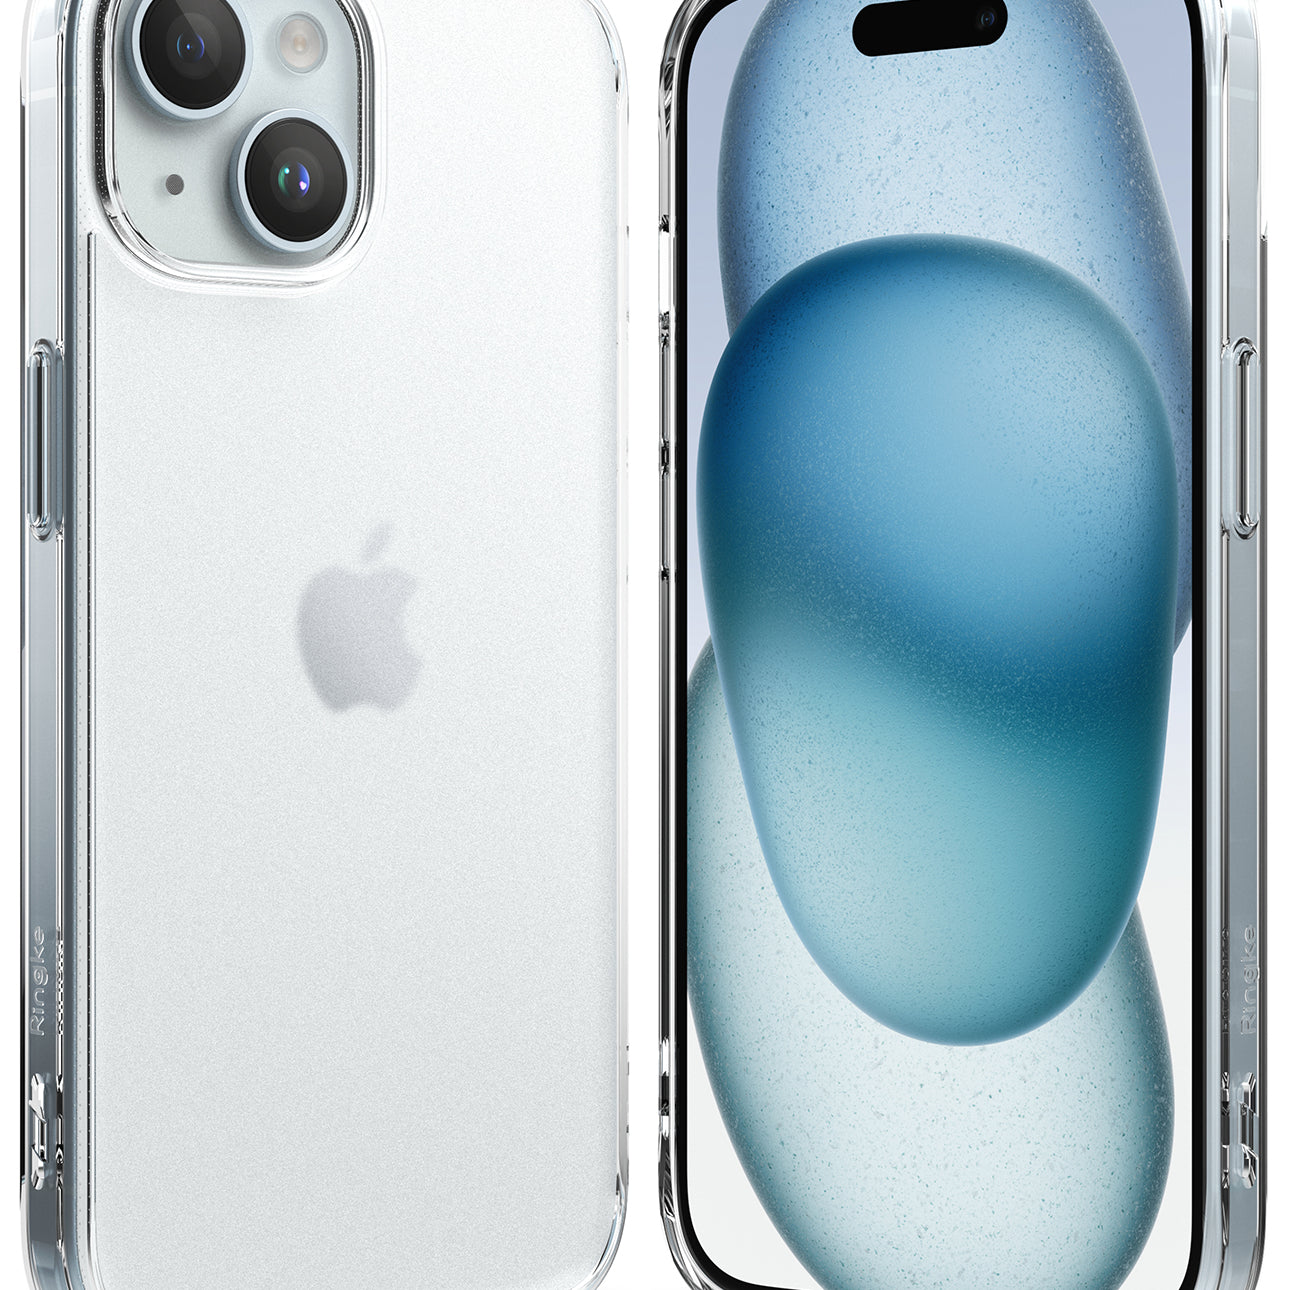 iPhone 15 Case | Fusion